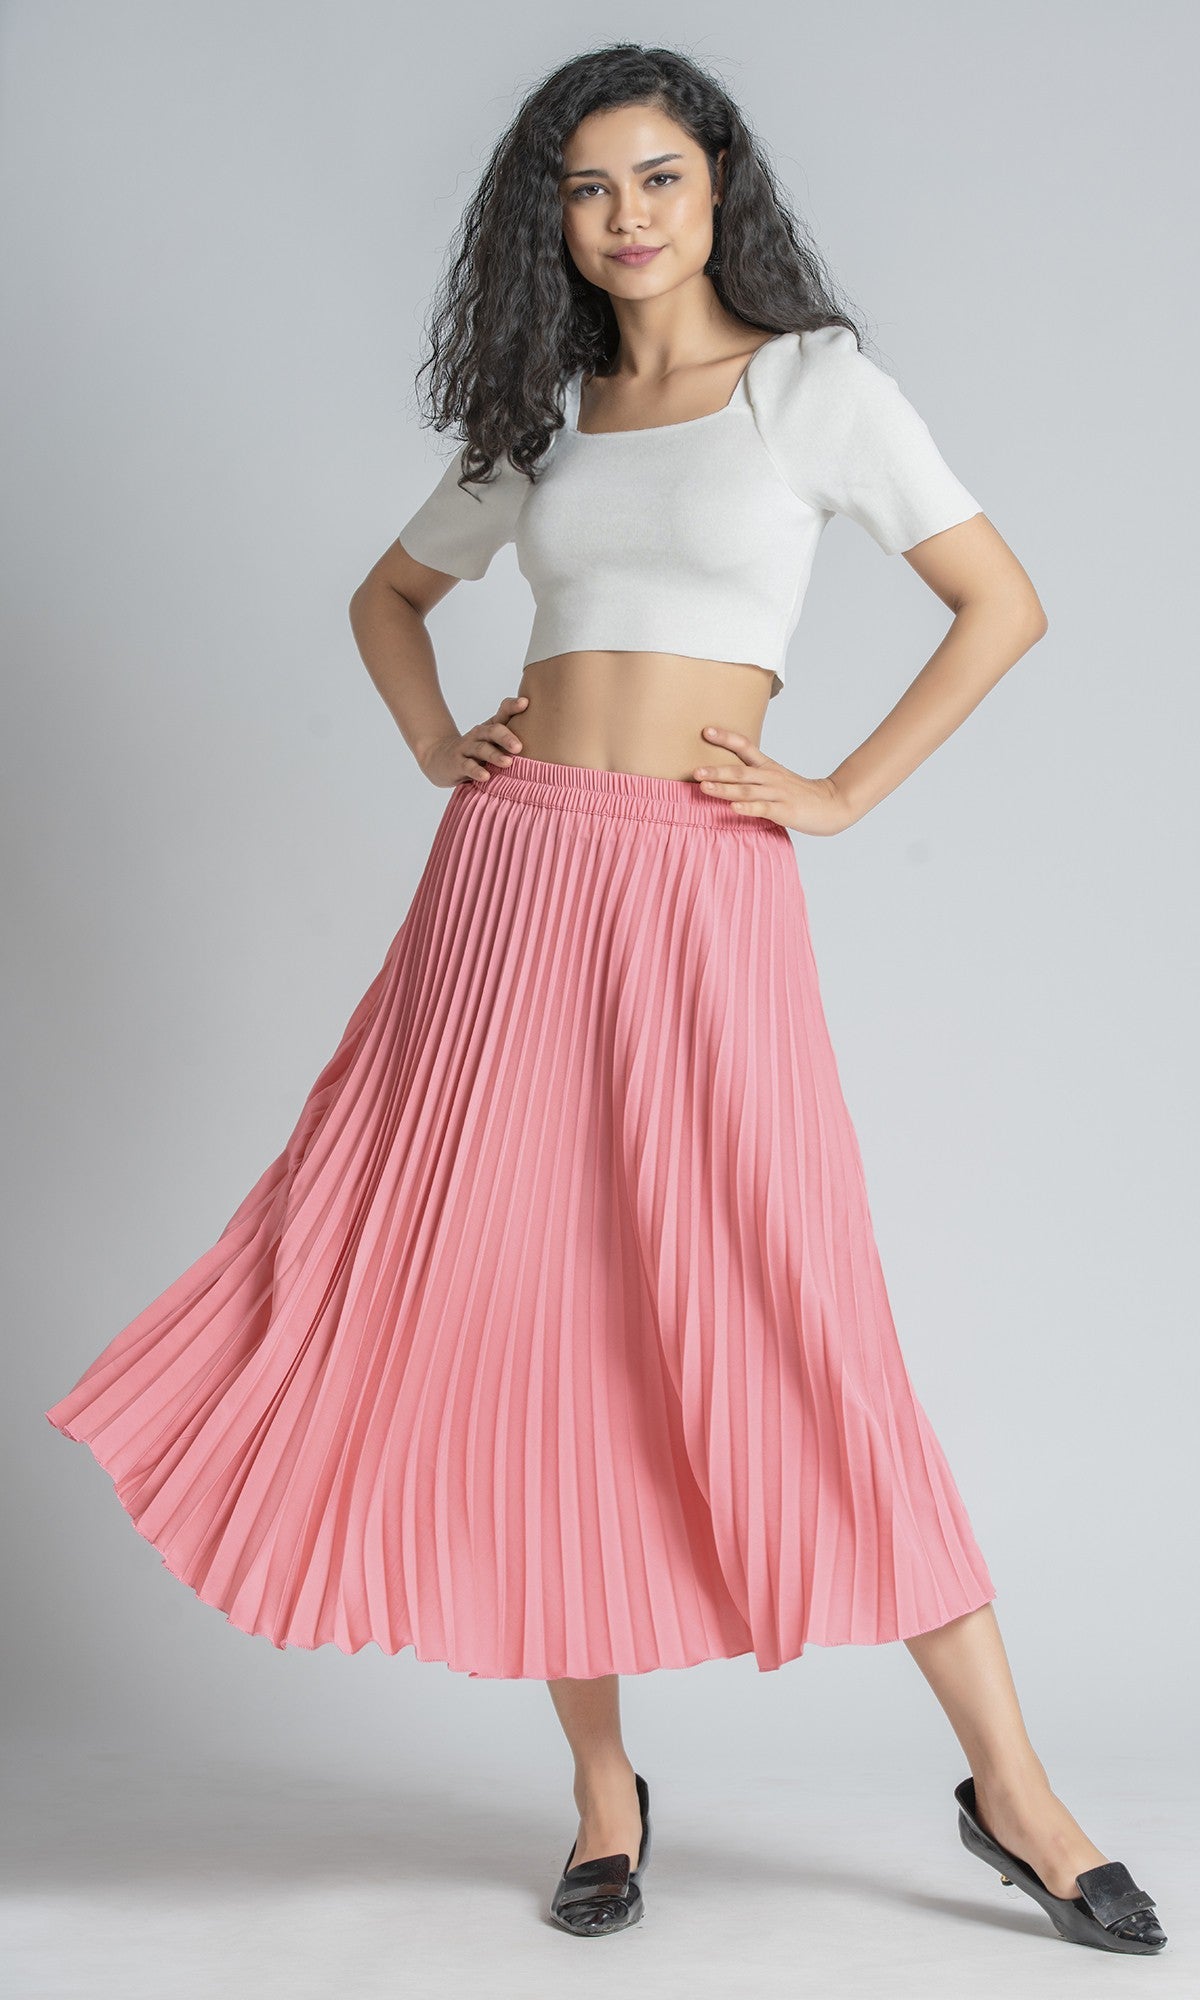 StyleInstant Soild Pink Pleated Skirt